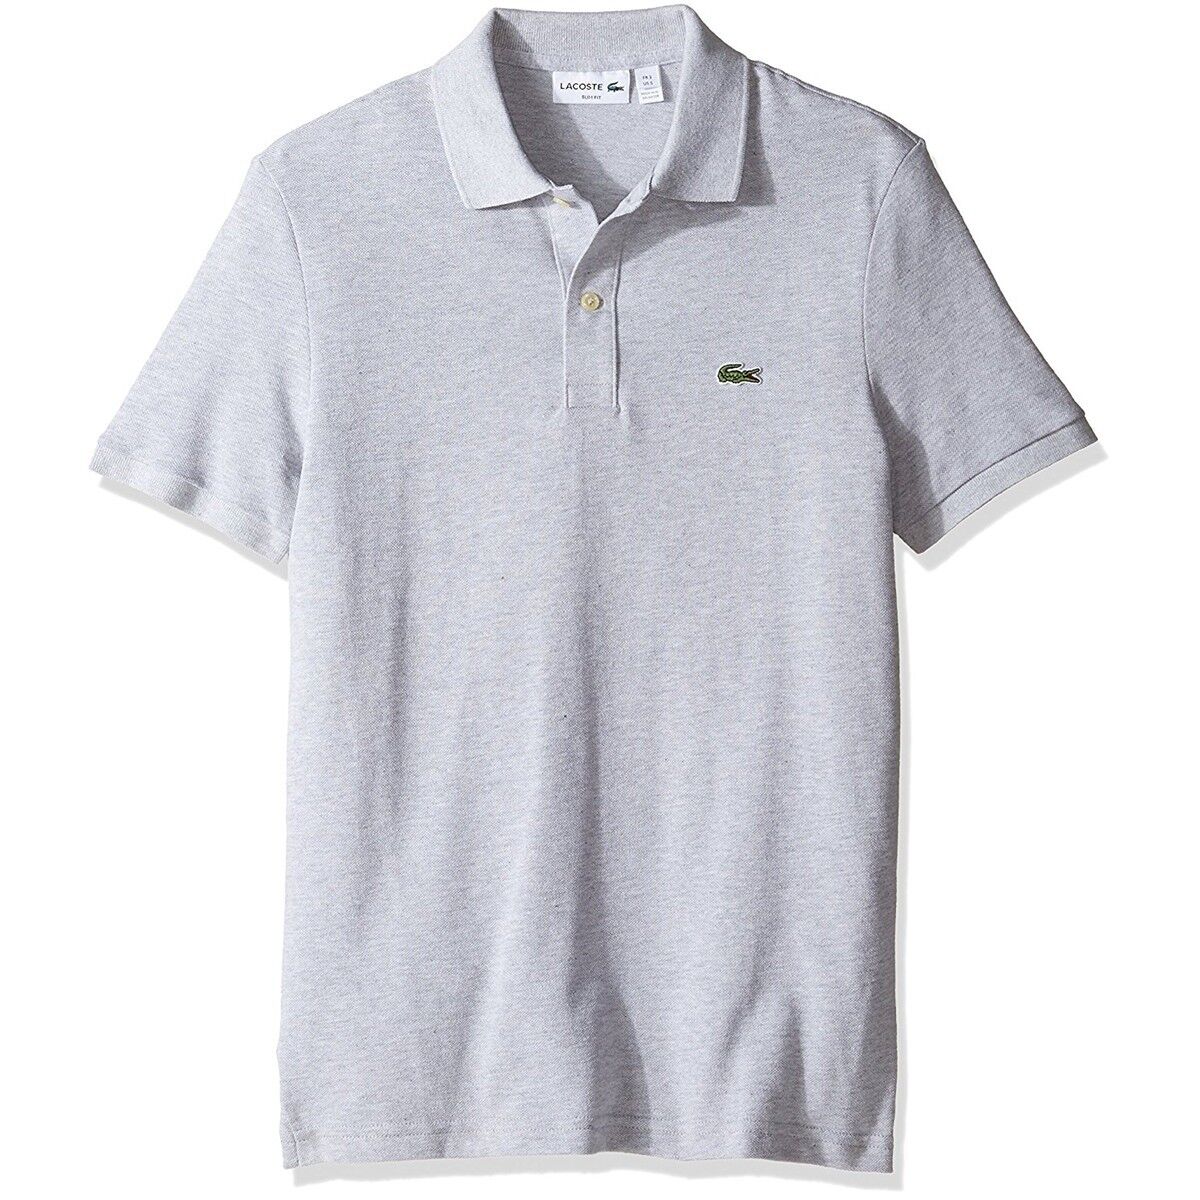 Lacoste Men Classic Pique Slim Fit Casual Cotton Jersey Pique Polo T-Shirt NEW